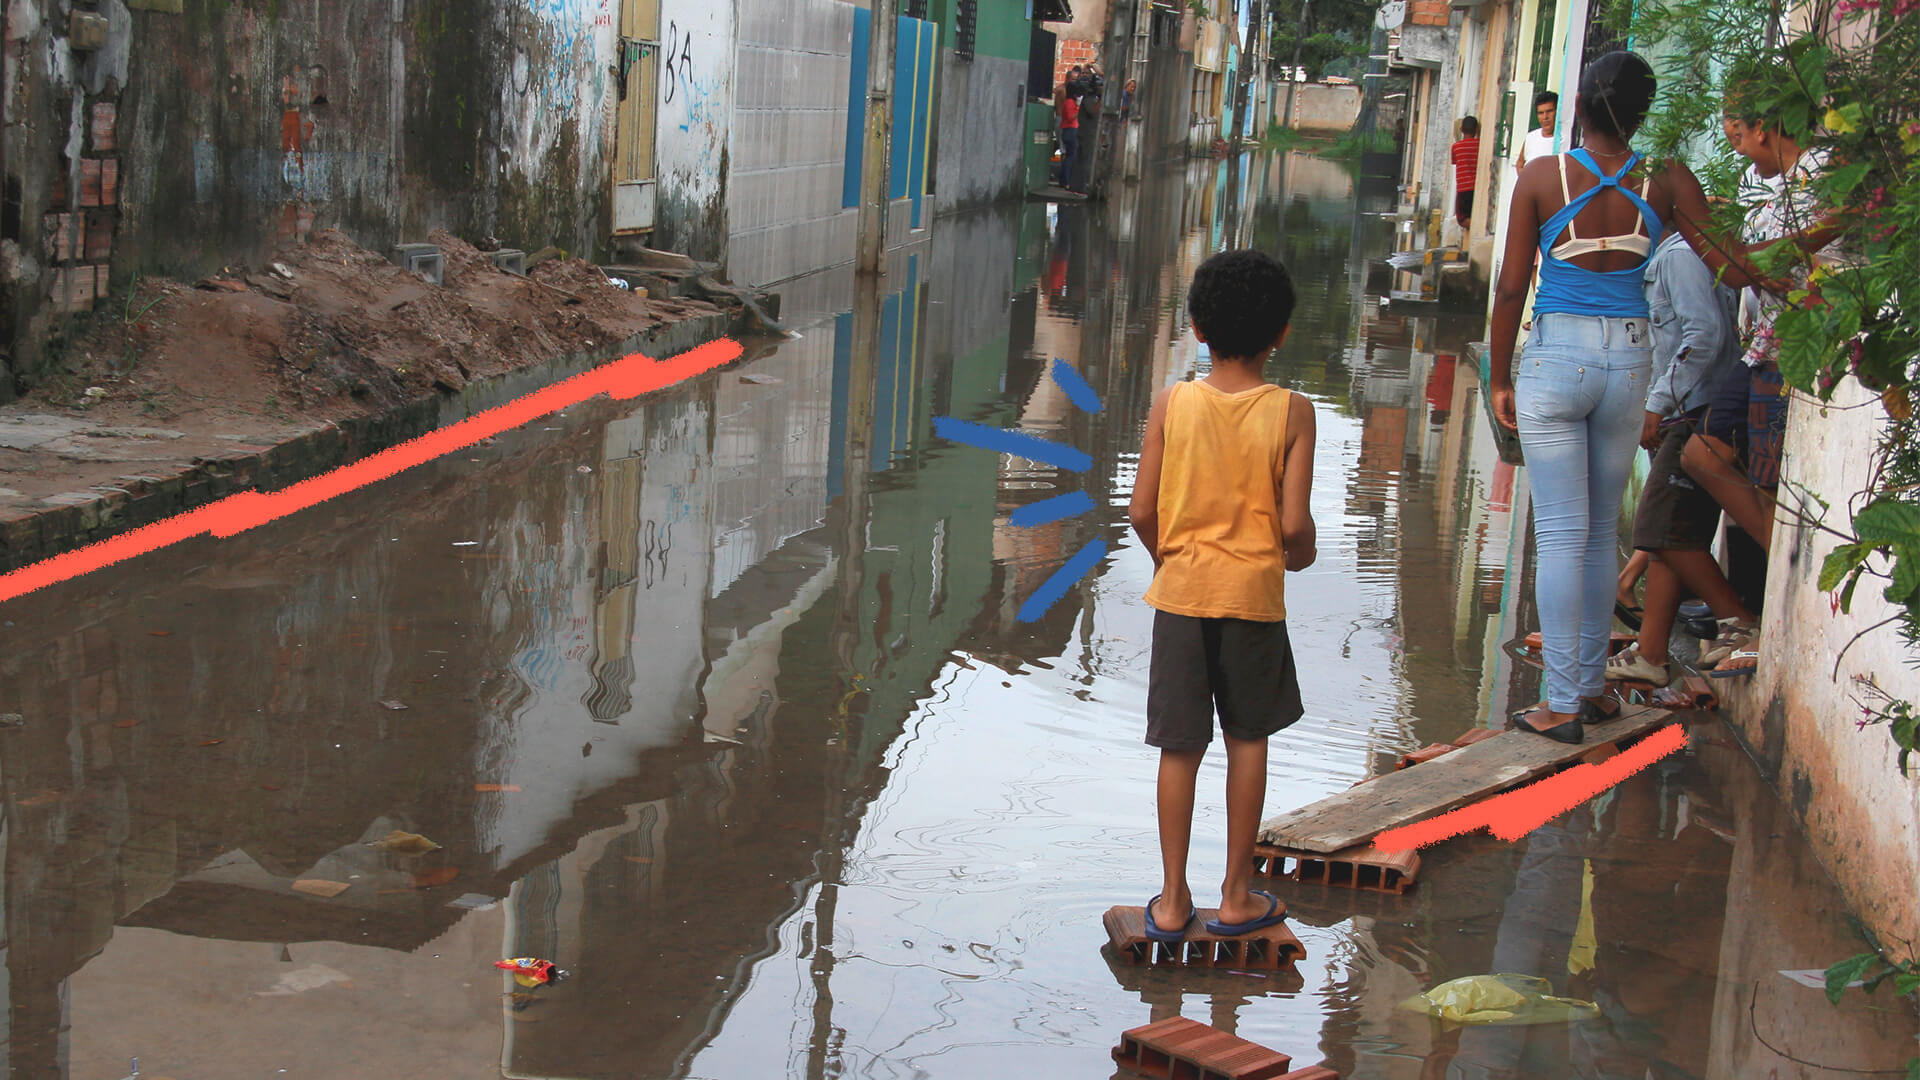 Um menino negro, de costas, olha para a rua tomada por uma enchente. A imagem ilustra uma matéria sobre combate ao racismo ambiental.